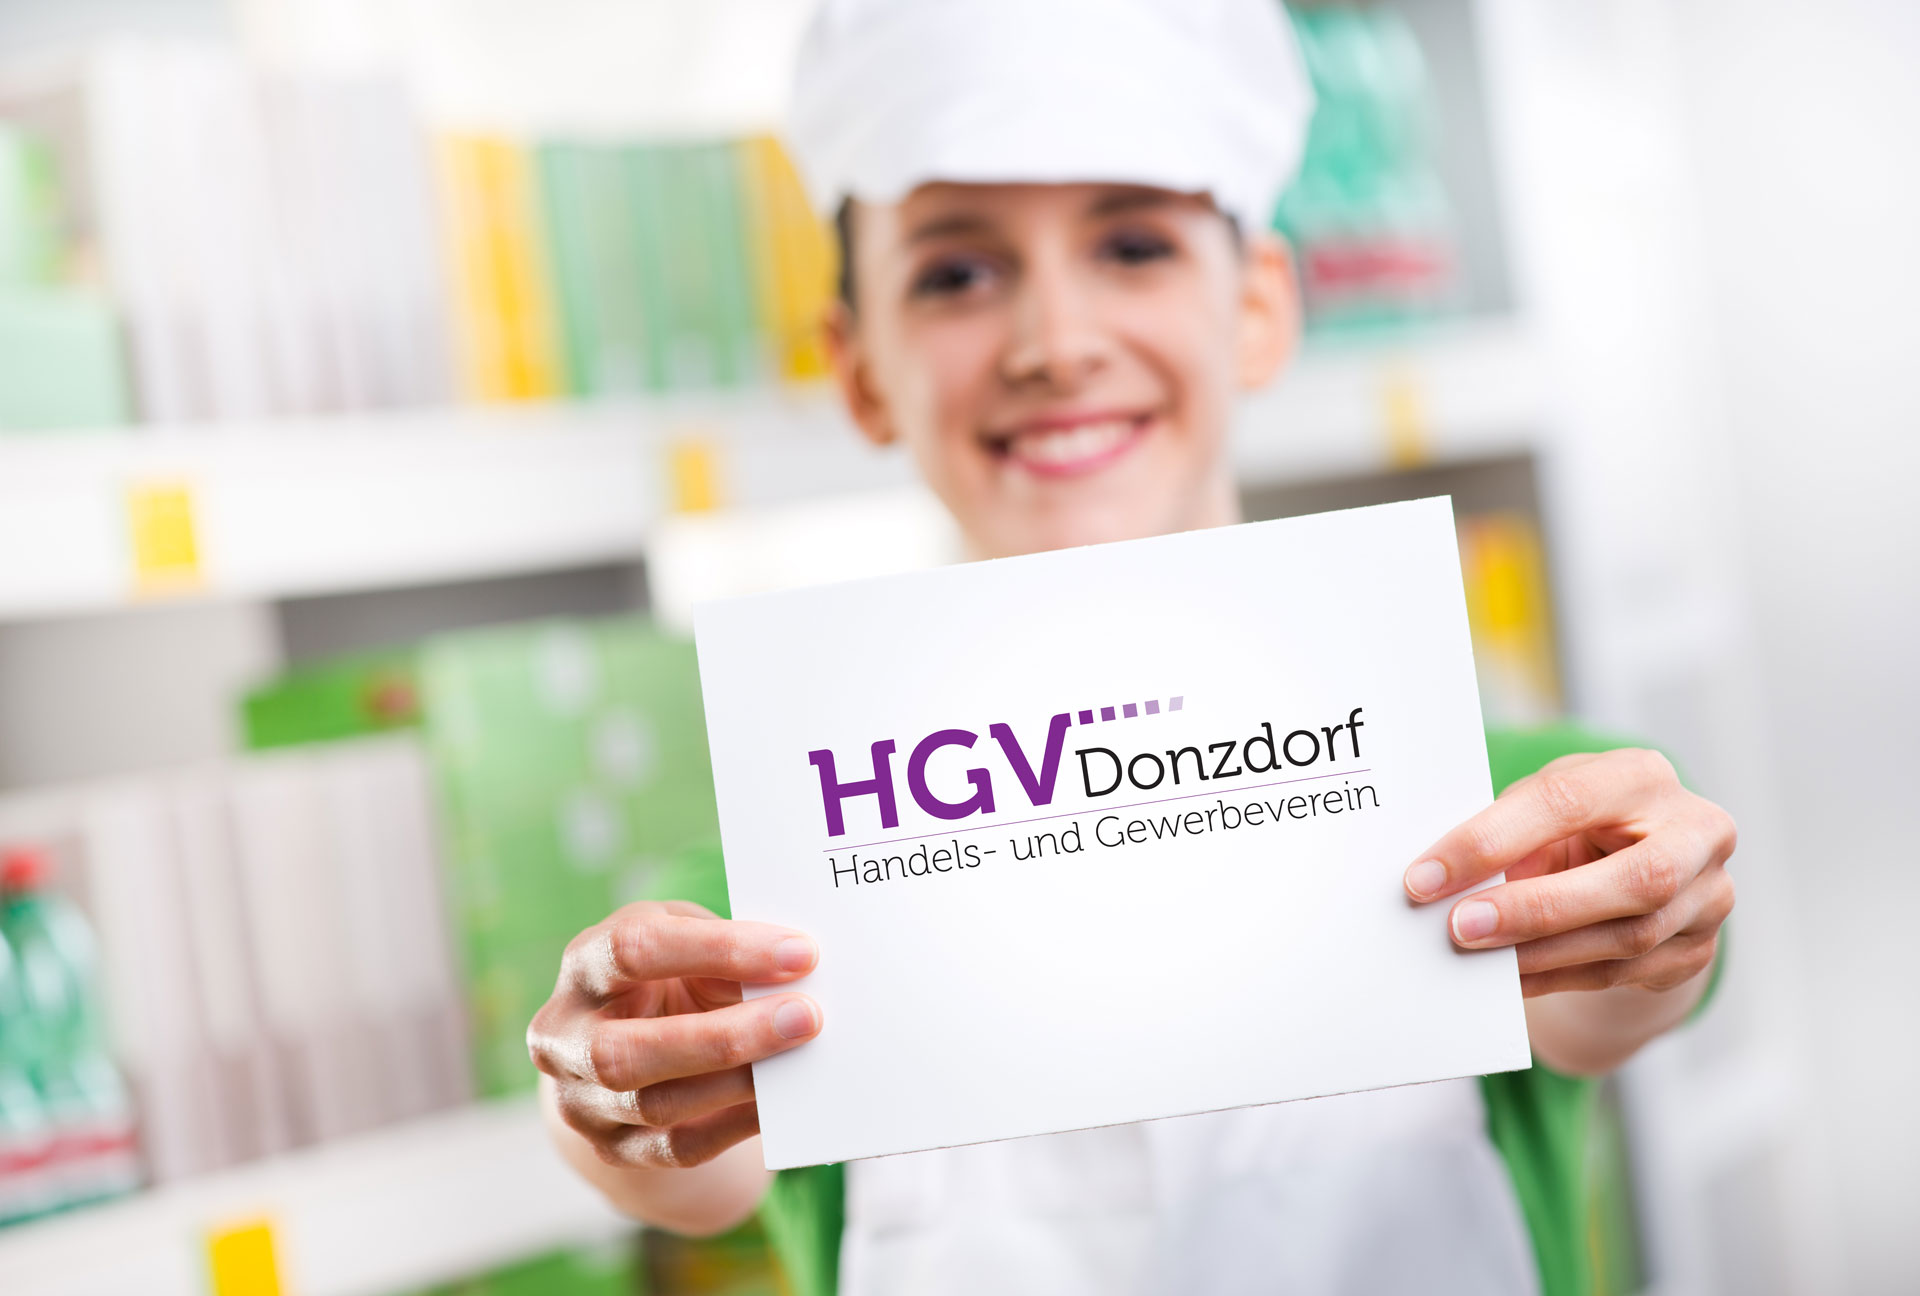 (c) Hgv-donzdorf.de